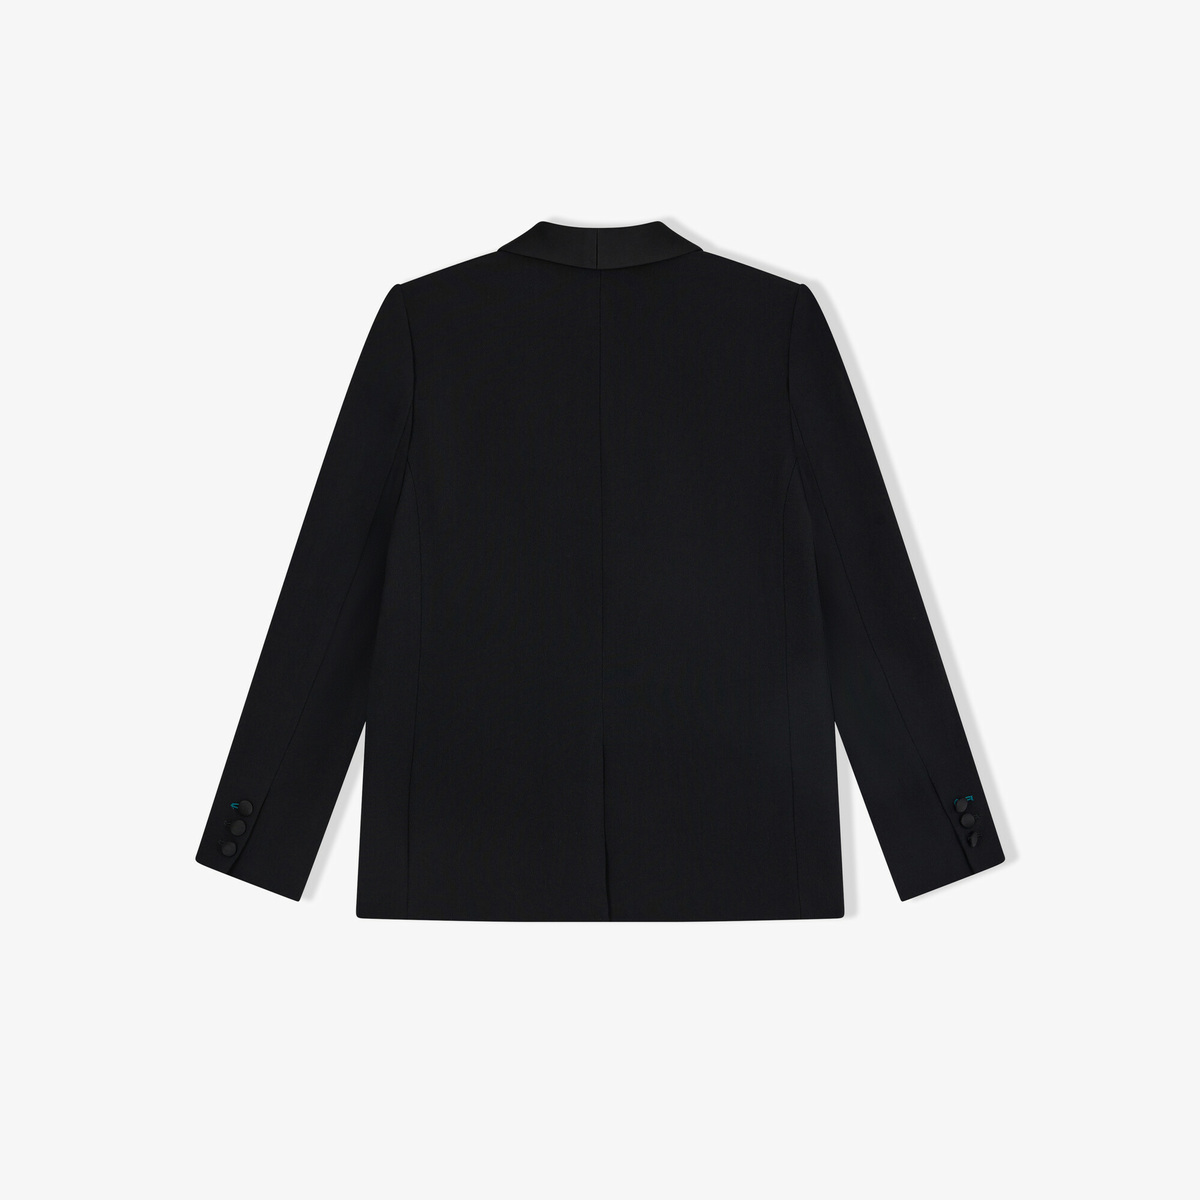 Tuxedo Jacket France, Black - Straight cut - Acetate / Viscose - image 2